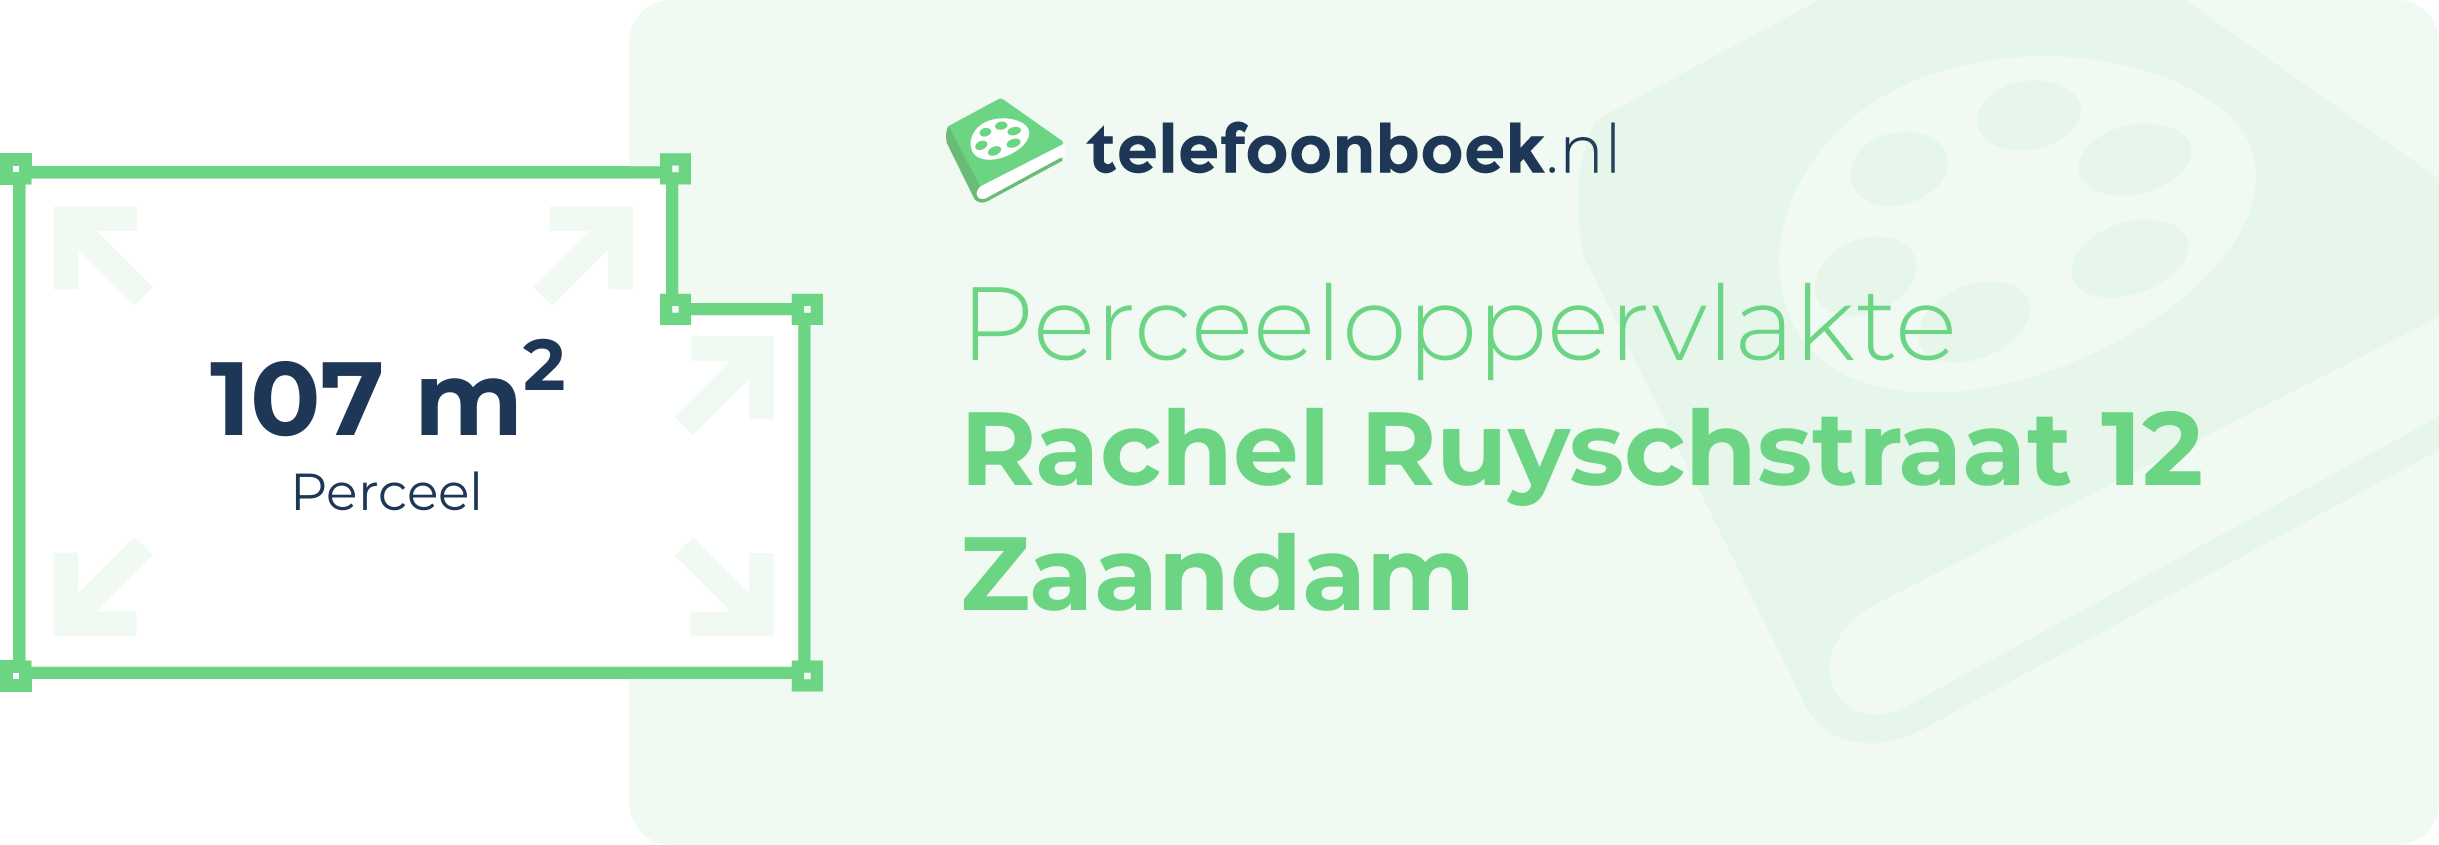 Perceeloppervlakte Rachel Ruyschstraat 12 Zaandam